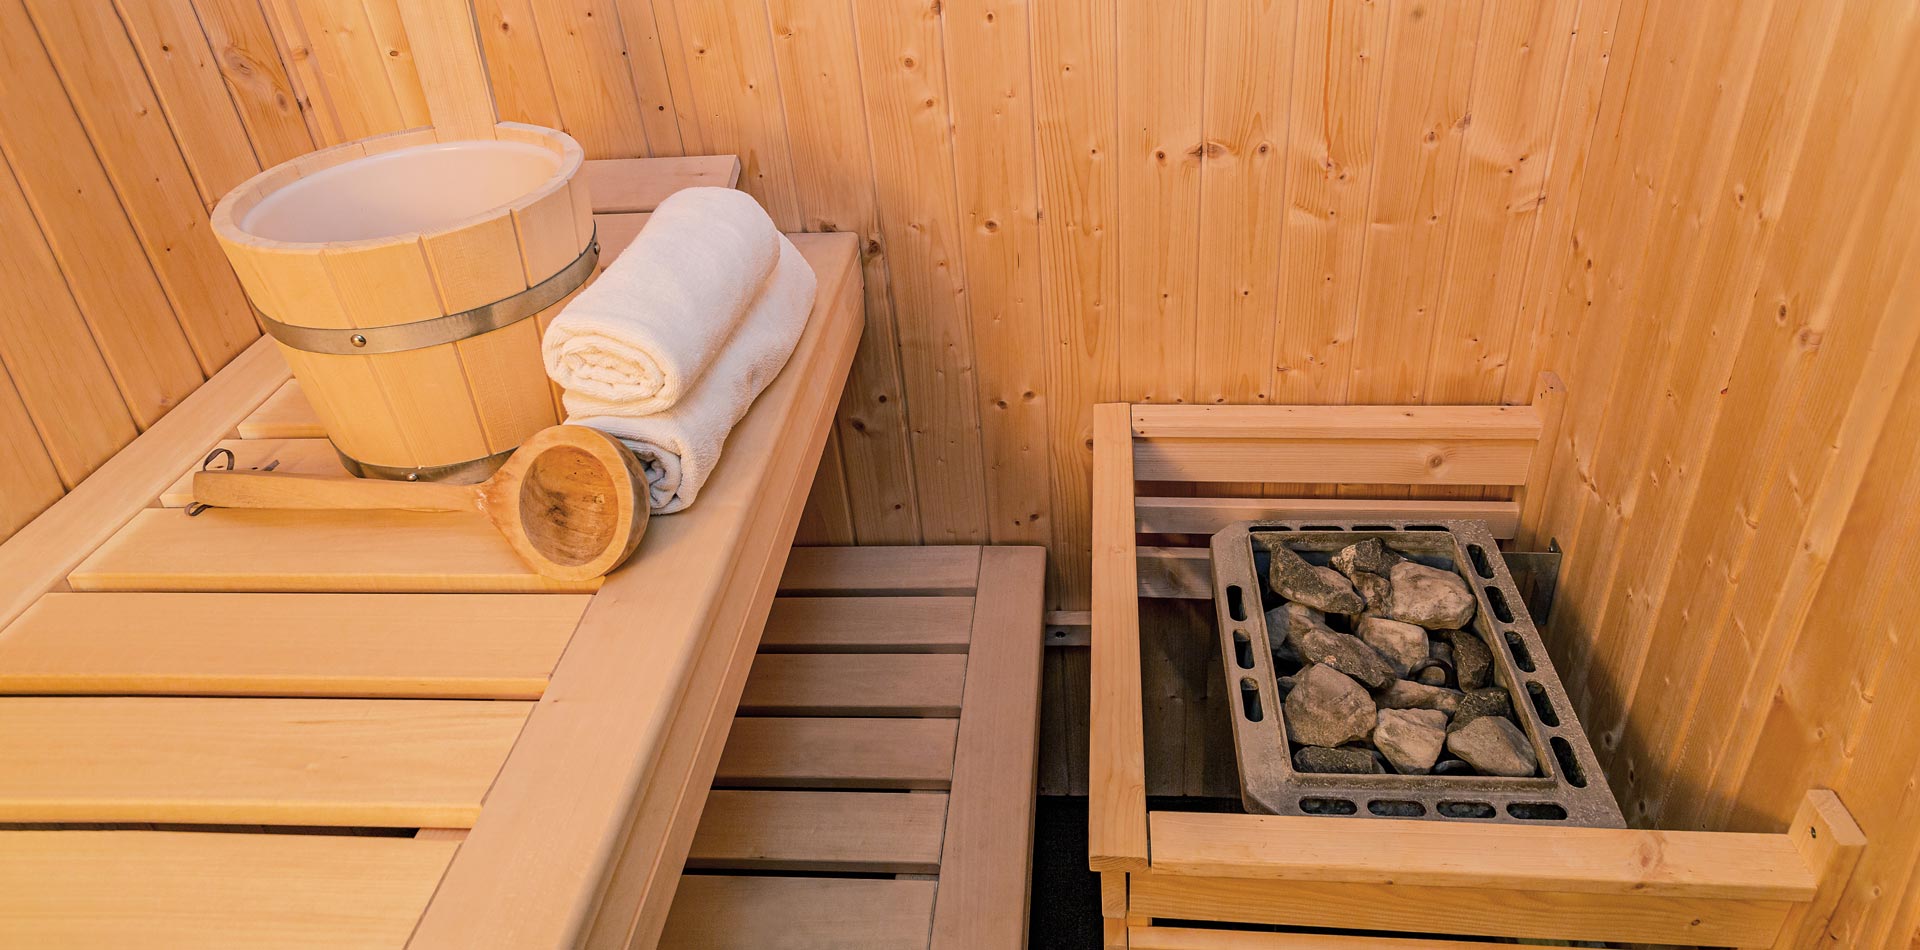 Saunaofen, Schöpfkelle, Aufgusskübel und Handtücher in einer Holzsauna